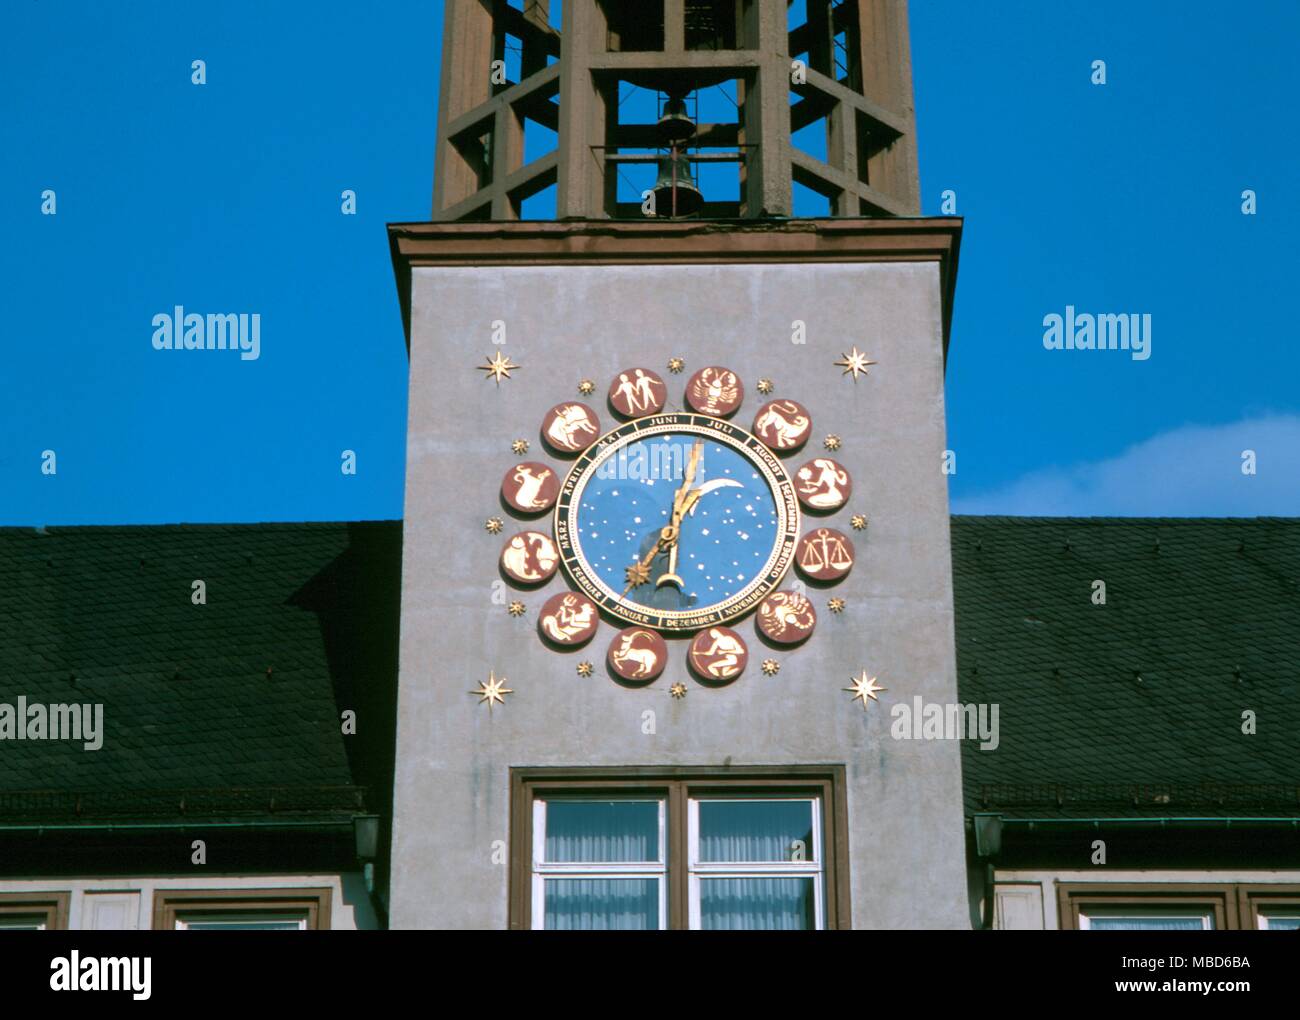 Astrologie, Codiac, moderne Tierkreis mit den Bildern in vergoldeten roundels. Die City Square, Worms, Deutschland. - ©/Charles Walker Stockfoto